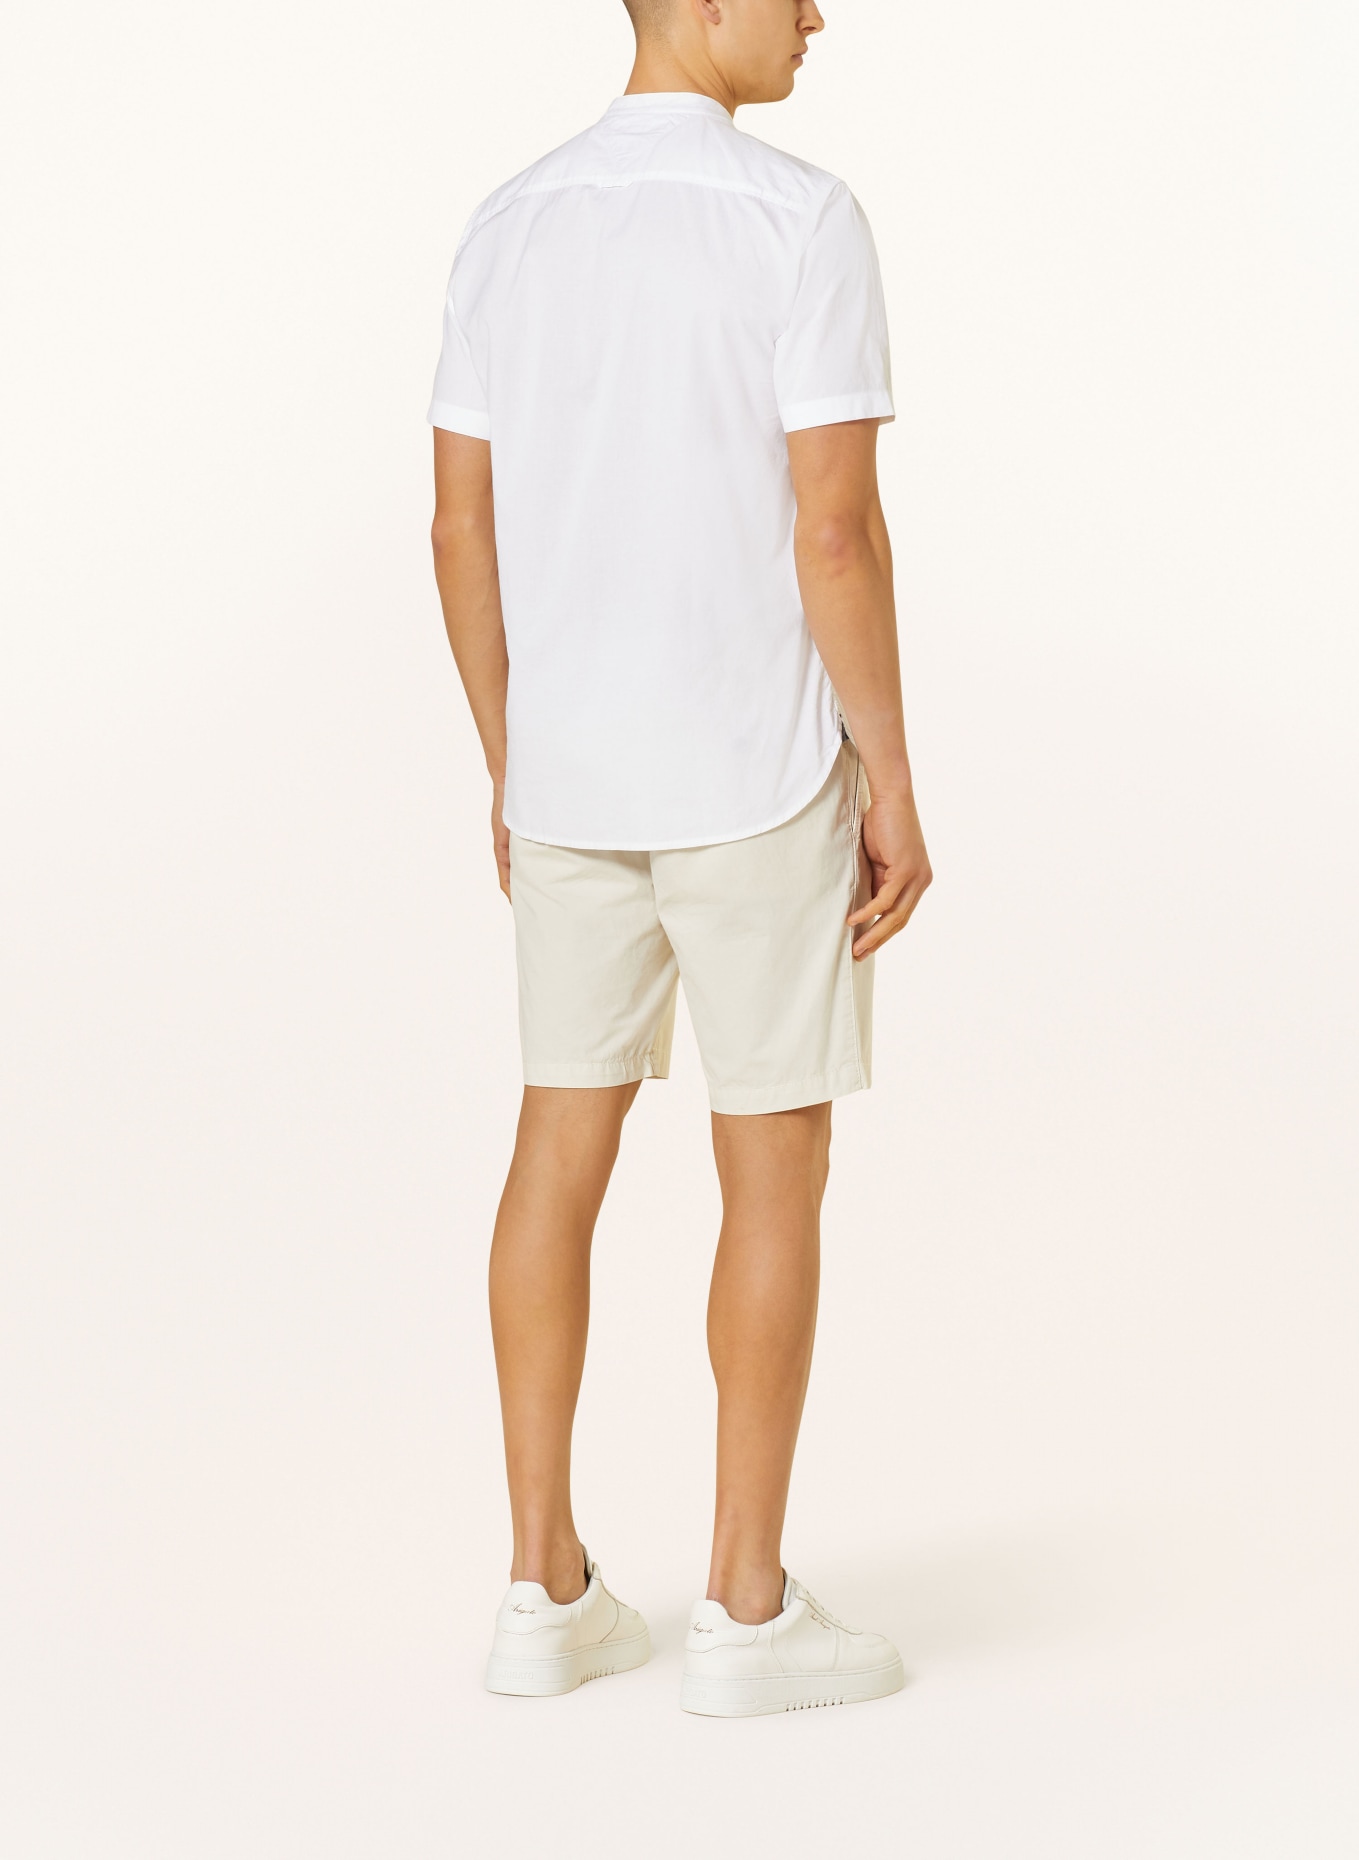 TOMMY HILFIGER Short sleeve shirt comfort fit, Color: WHITE (Image 3)